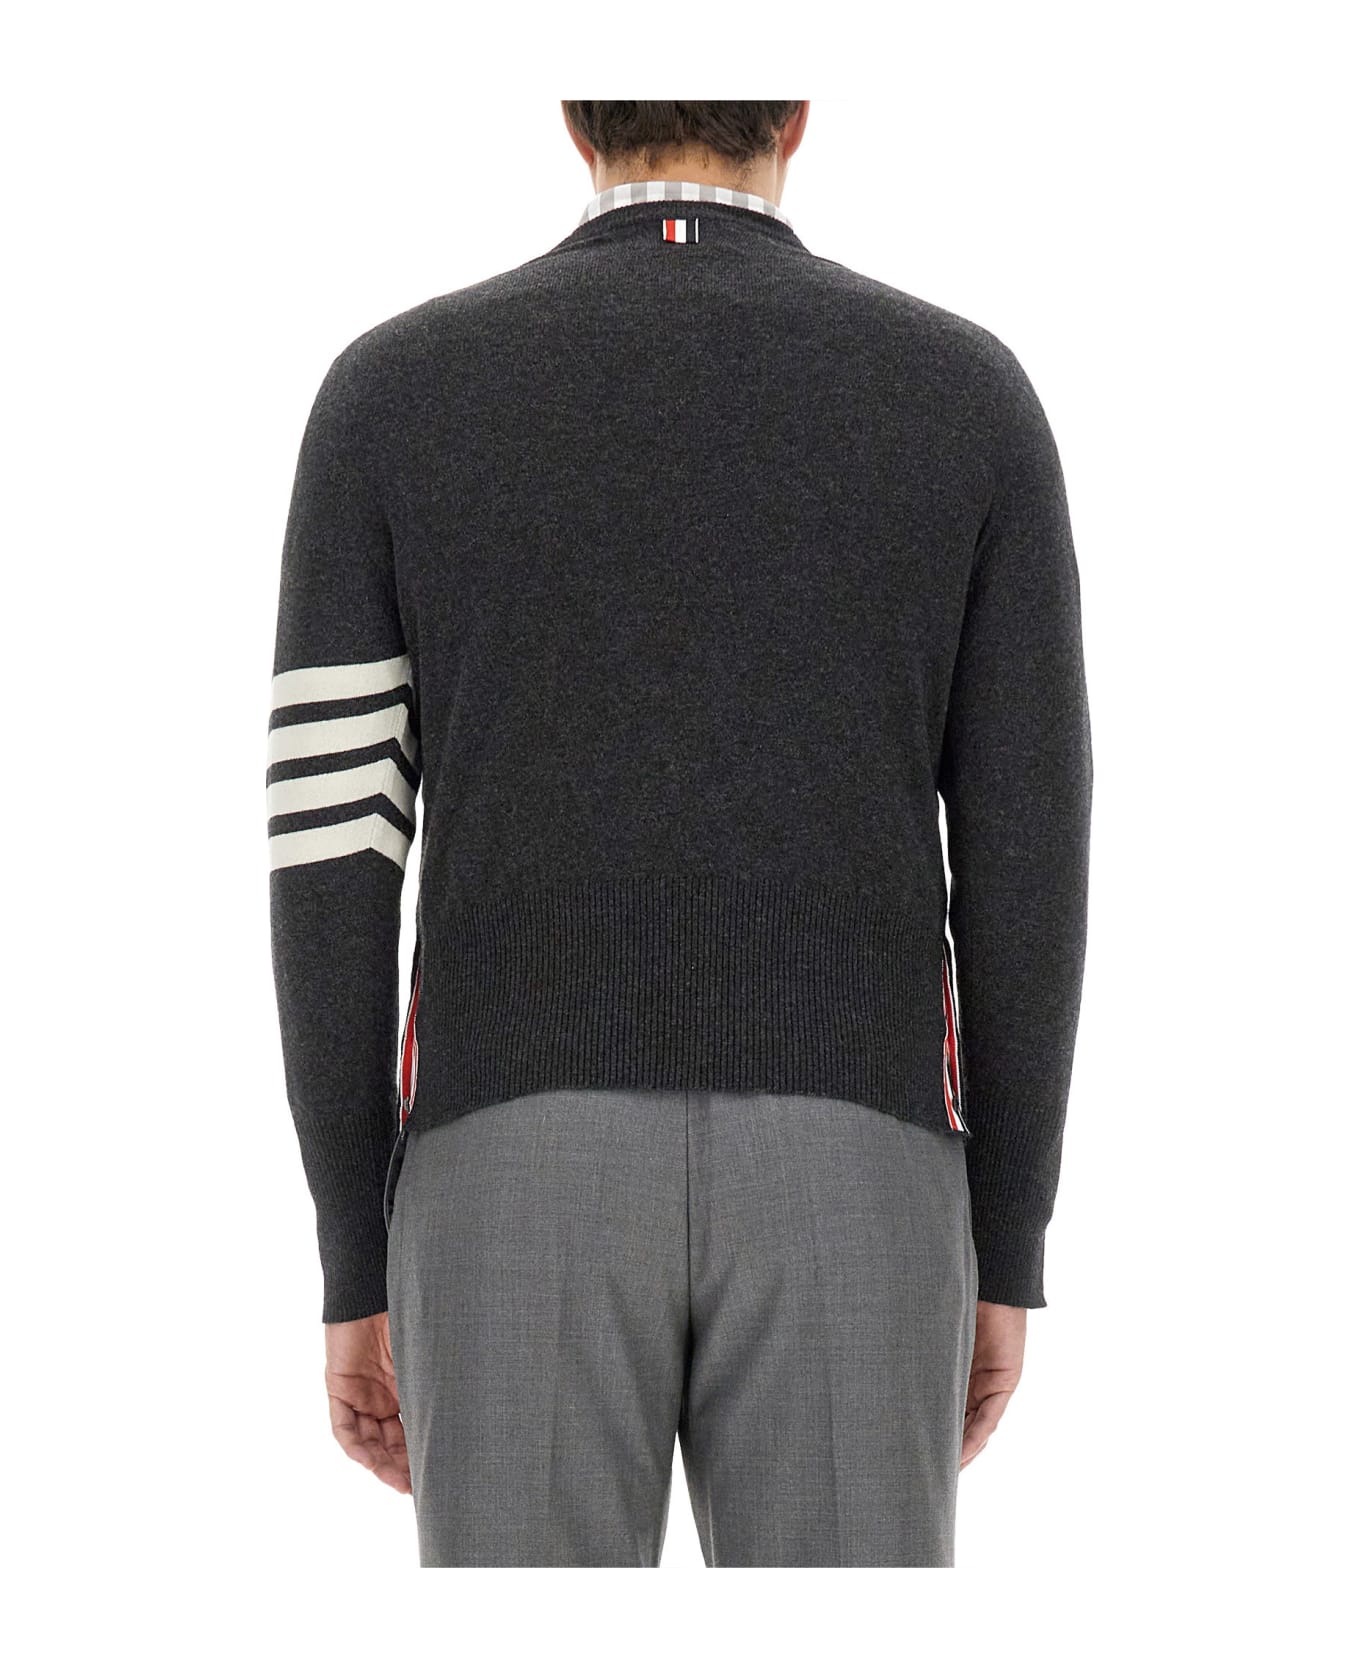 Thom Browne Cashmere Sweater - dark grey ニットウェア